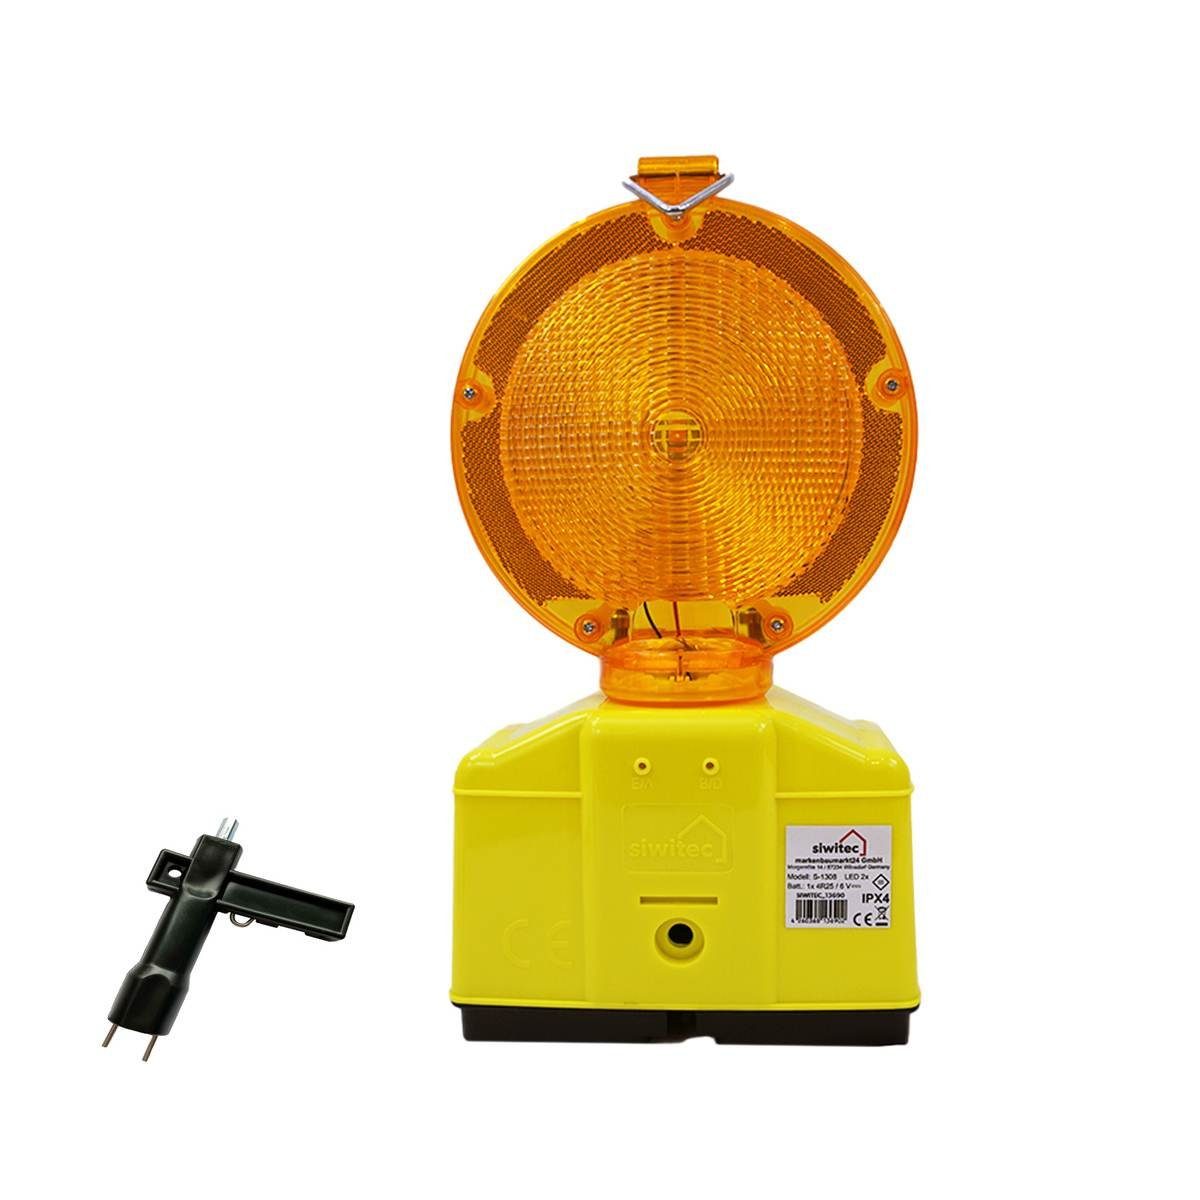 siwitec Baustrahler LED Warnleuchte mit Dämmerungssensor und Lampenschlüssel, Blink- und Dauerlichtfunktion, Dämmerungsautomatik Gelb